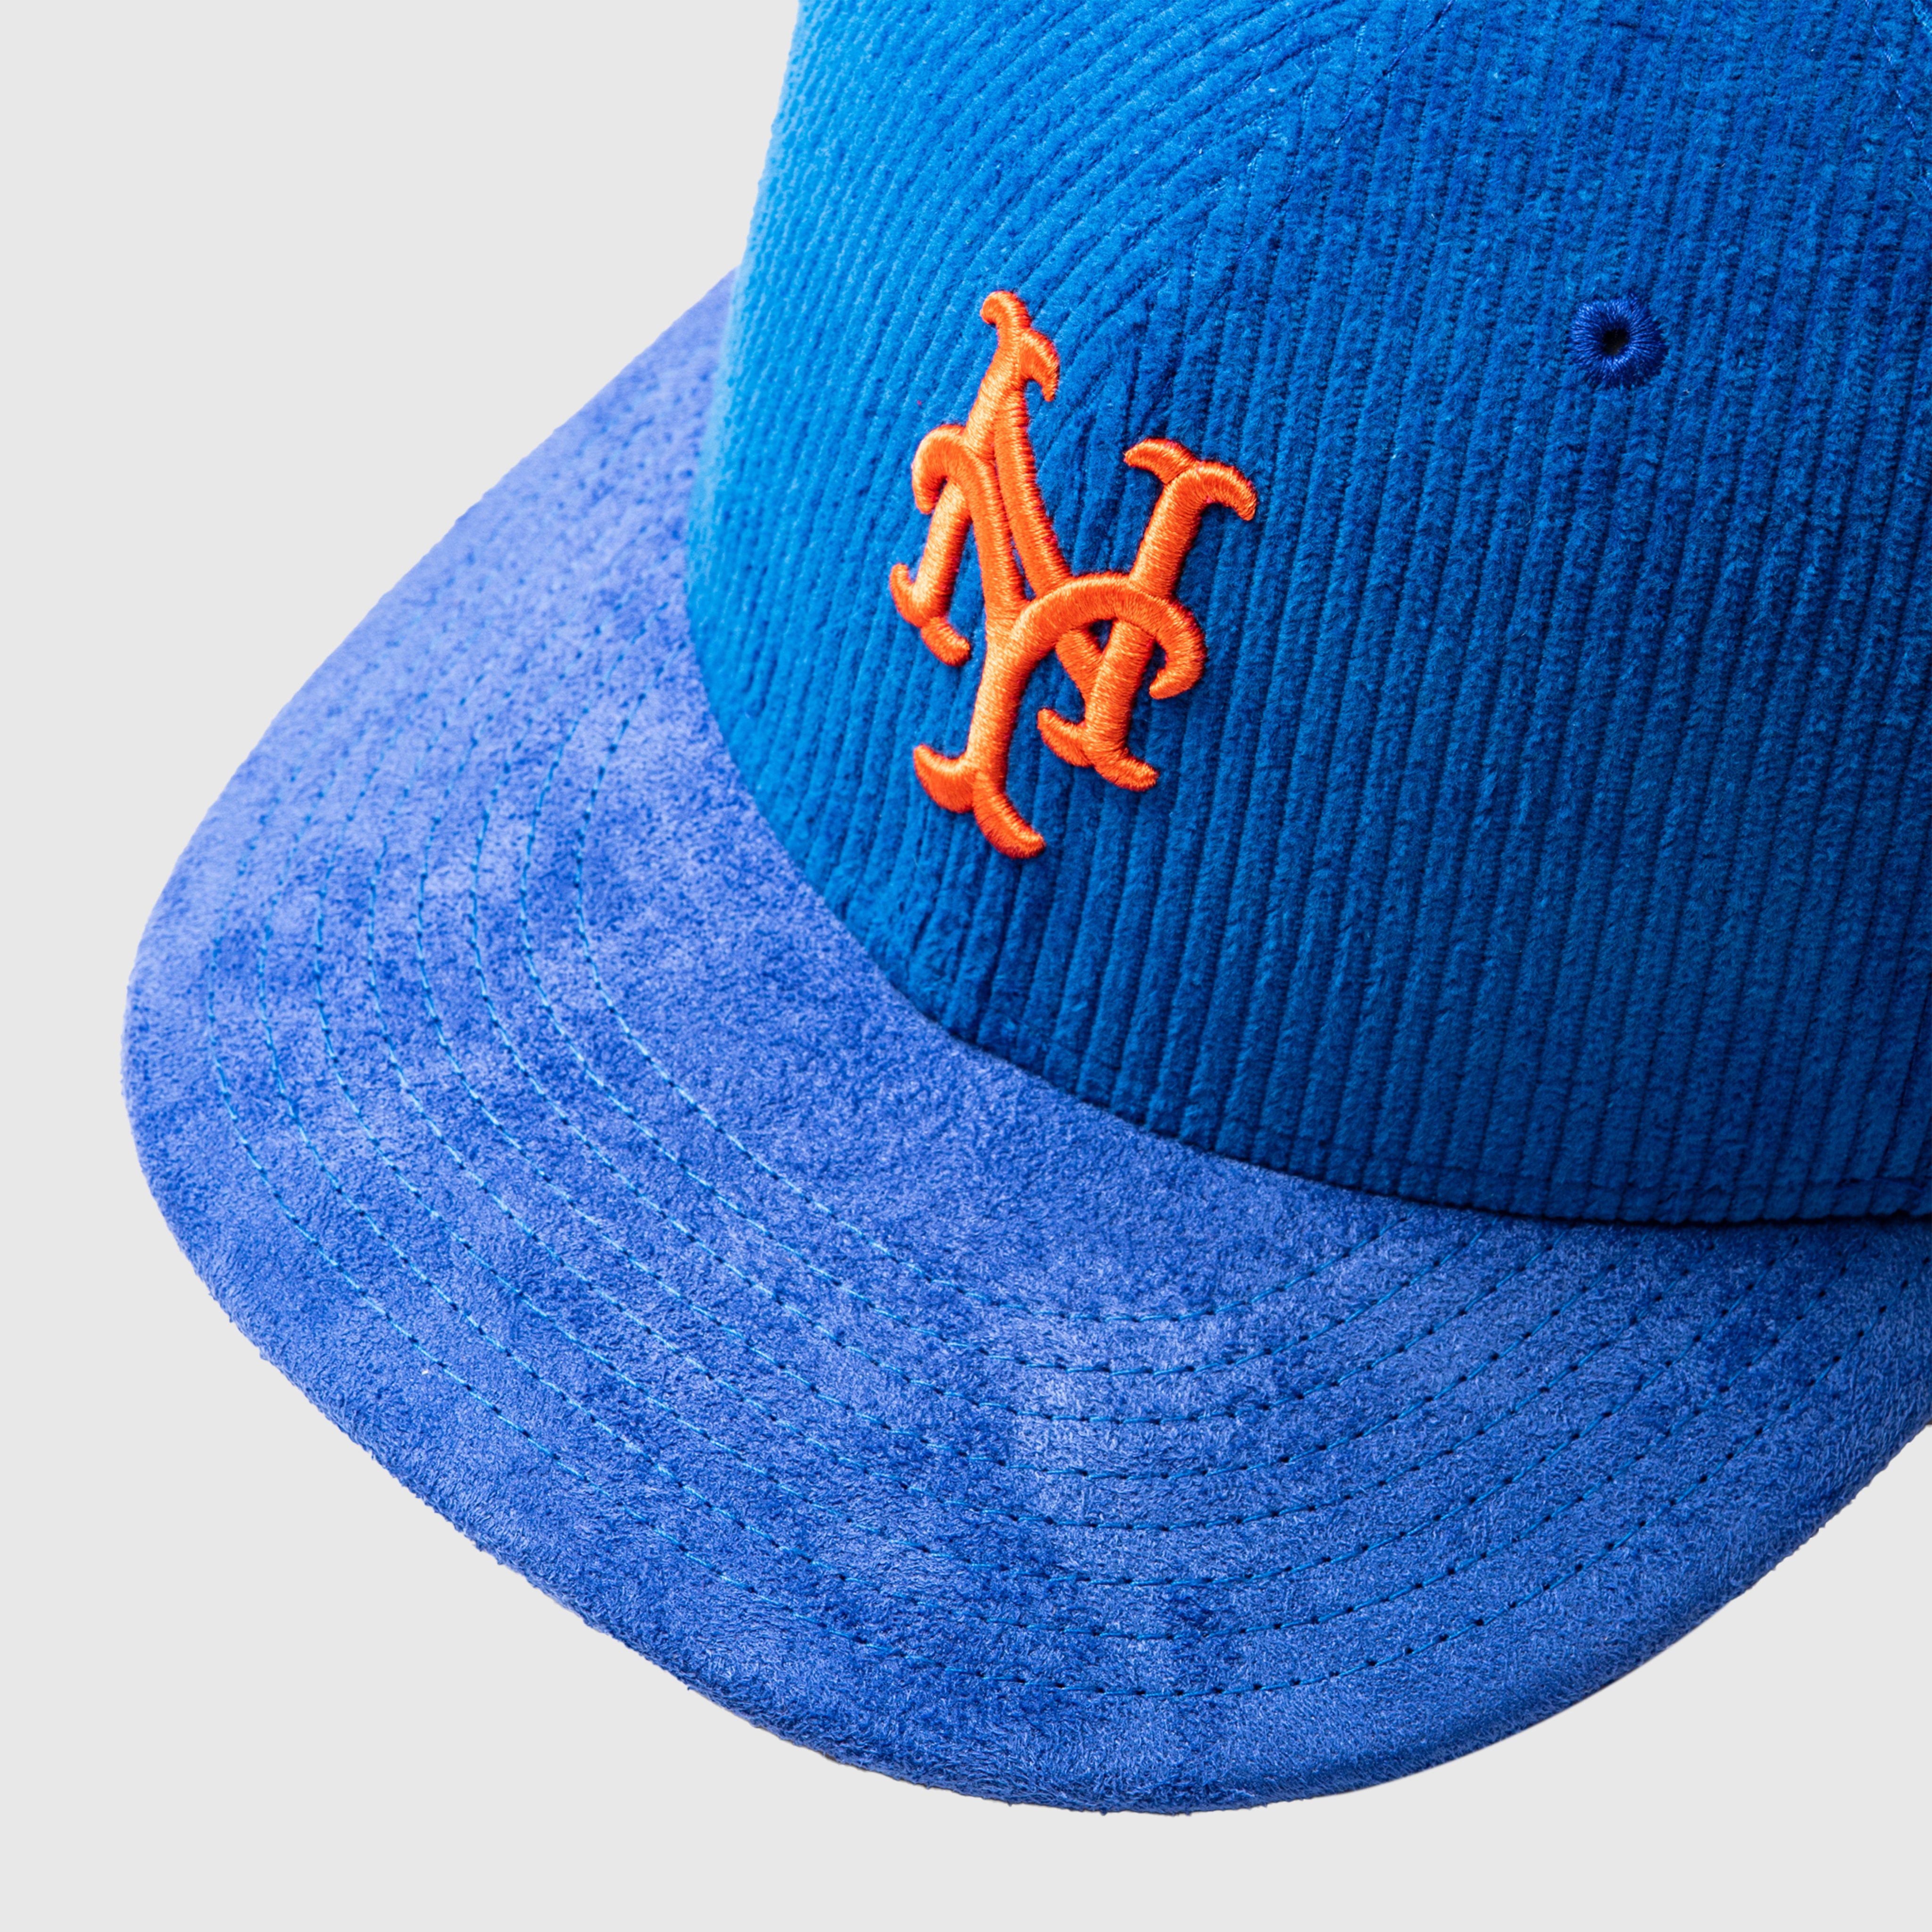 New York Mets packer x new era 7 5/8